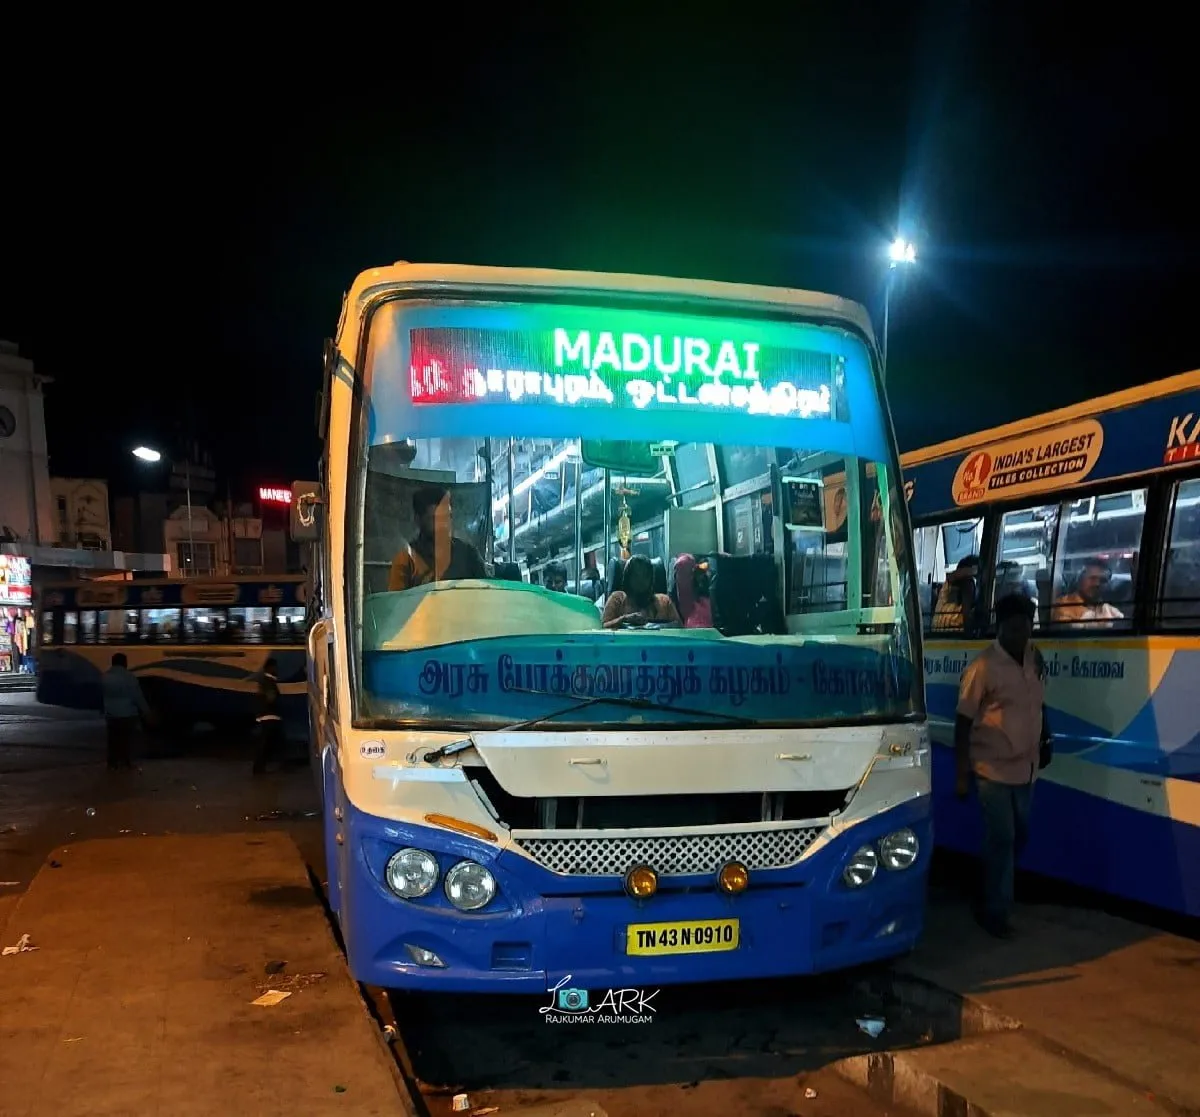 TNSTC TN 43 N 0910 Madurai - Ooty Bus Timings